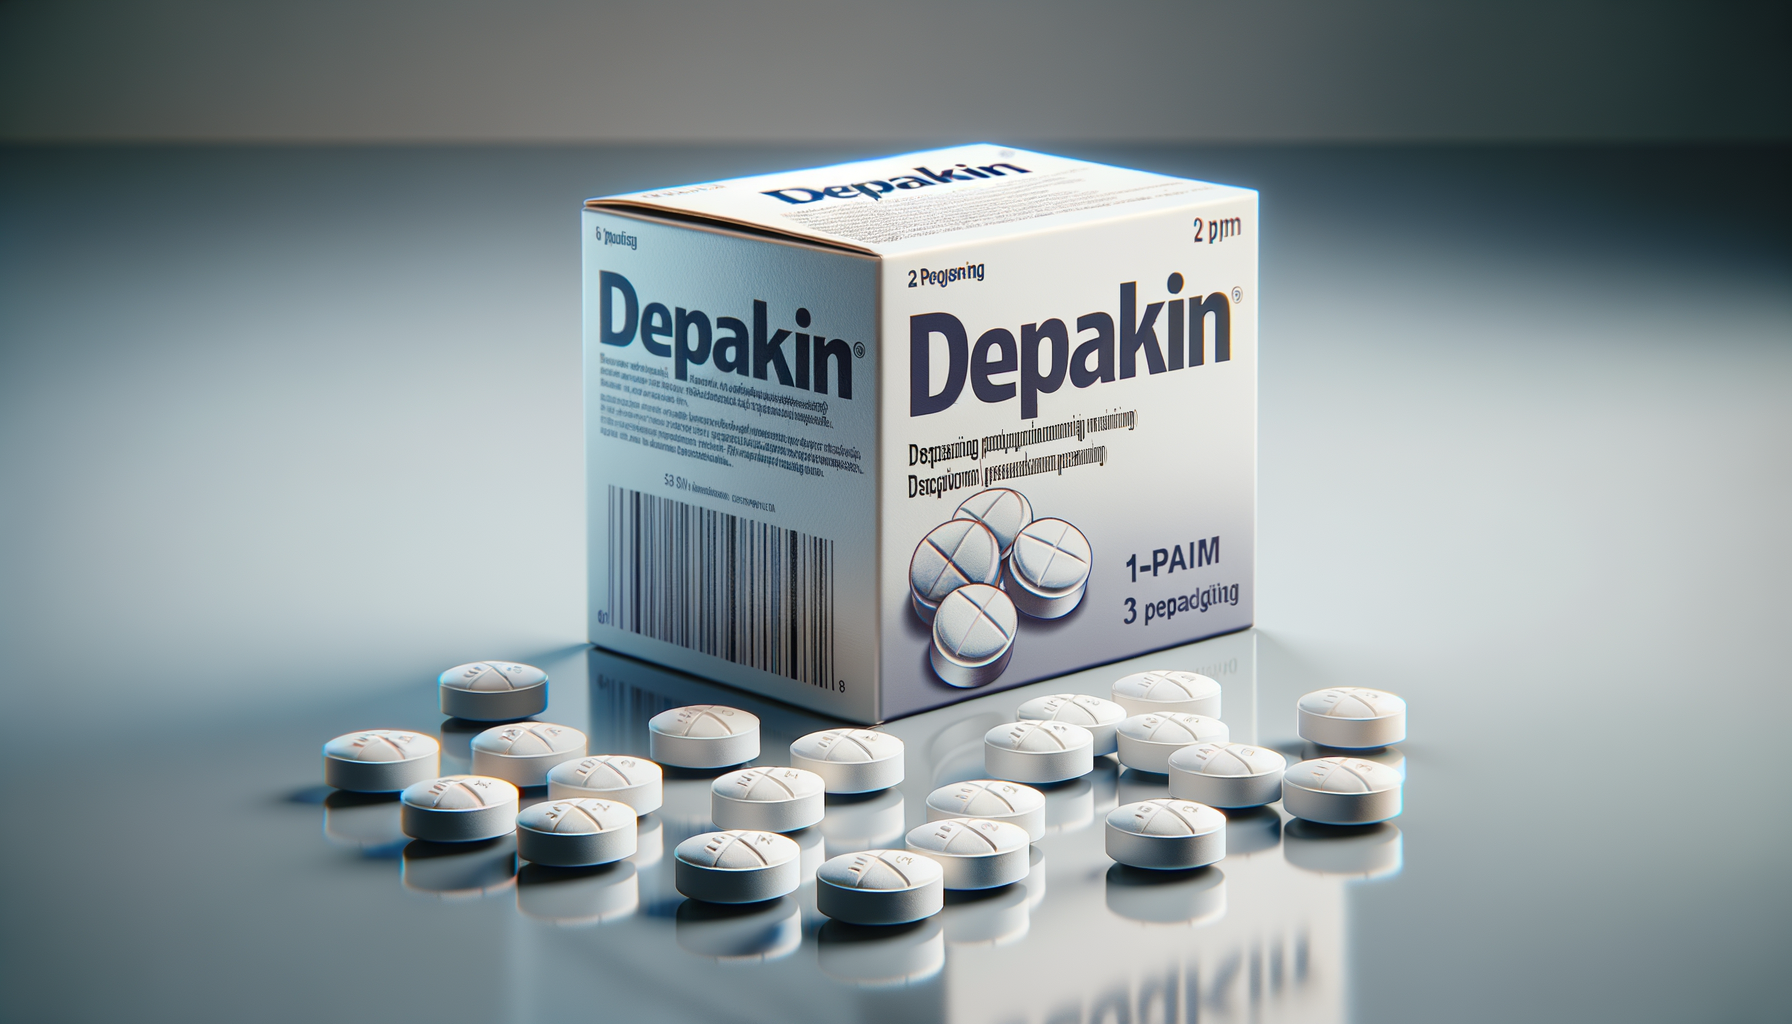 Come si chiama l’acido che contiene il depakin?